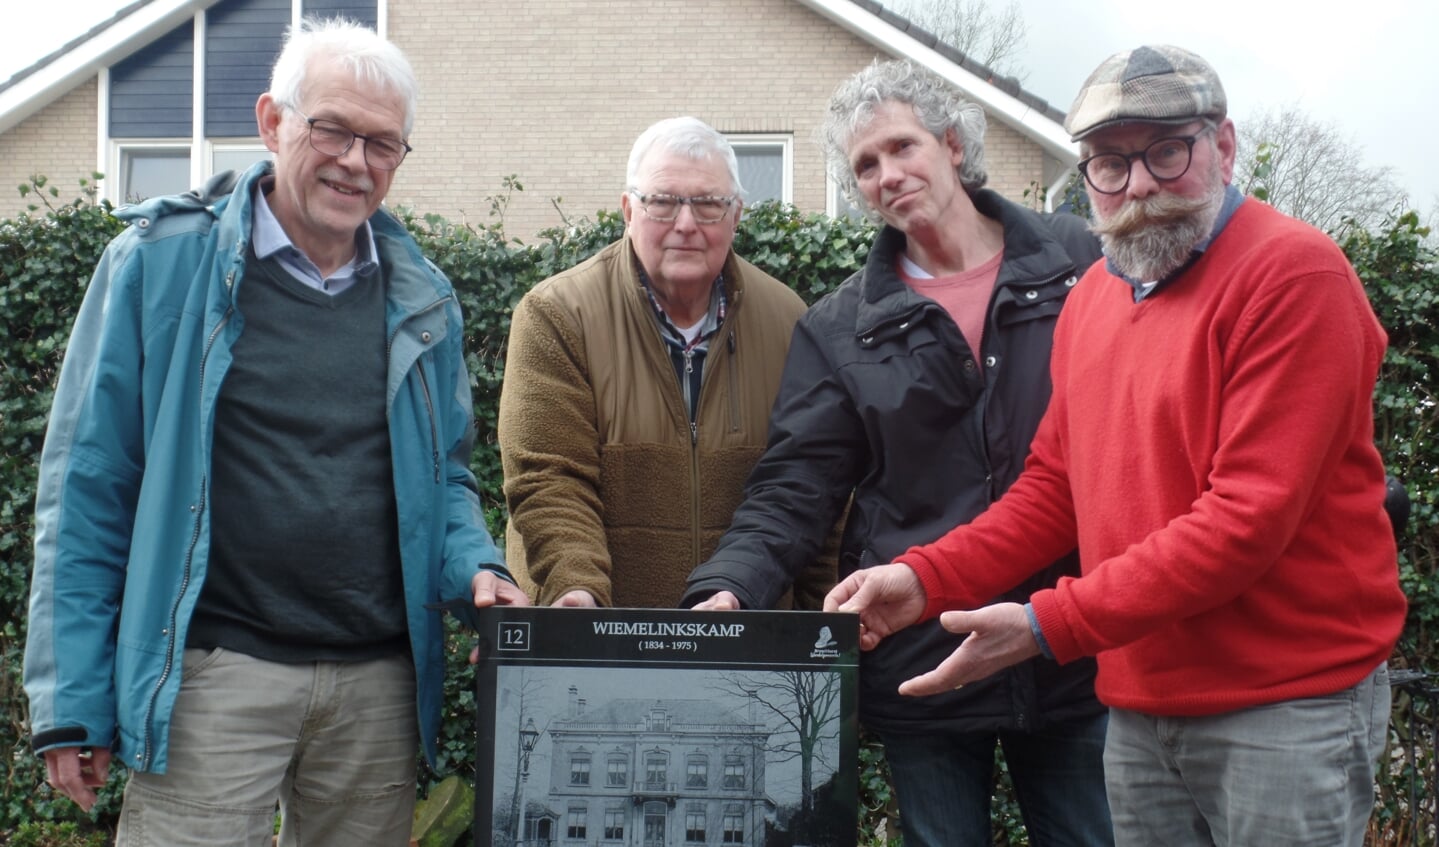 Harry Jansen (r.) toont trots de eerste tegel in het bijzijn van (v.l.n.r.) Bertus Rietberg, Fred Wolsink en Harold Pelgrom van de Foto-tegelwandelroute die in Vorden wordt gelegd. Foto: Jan Hendriksen.